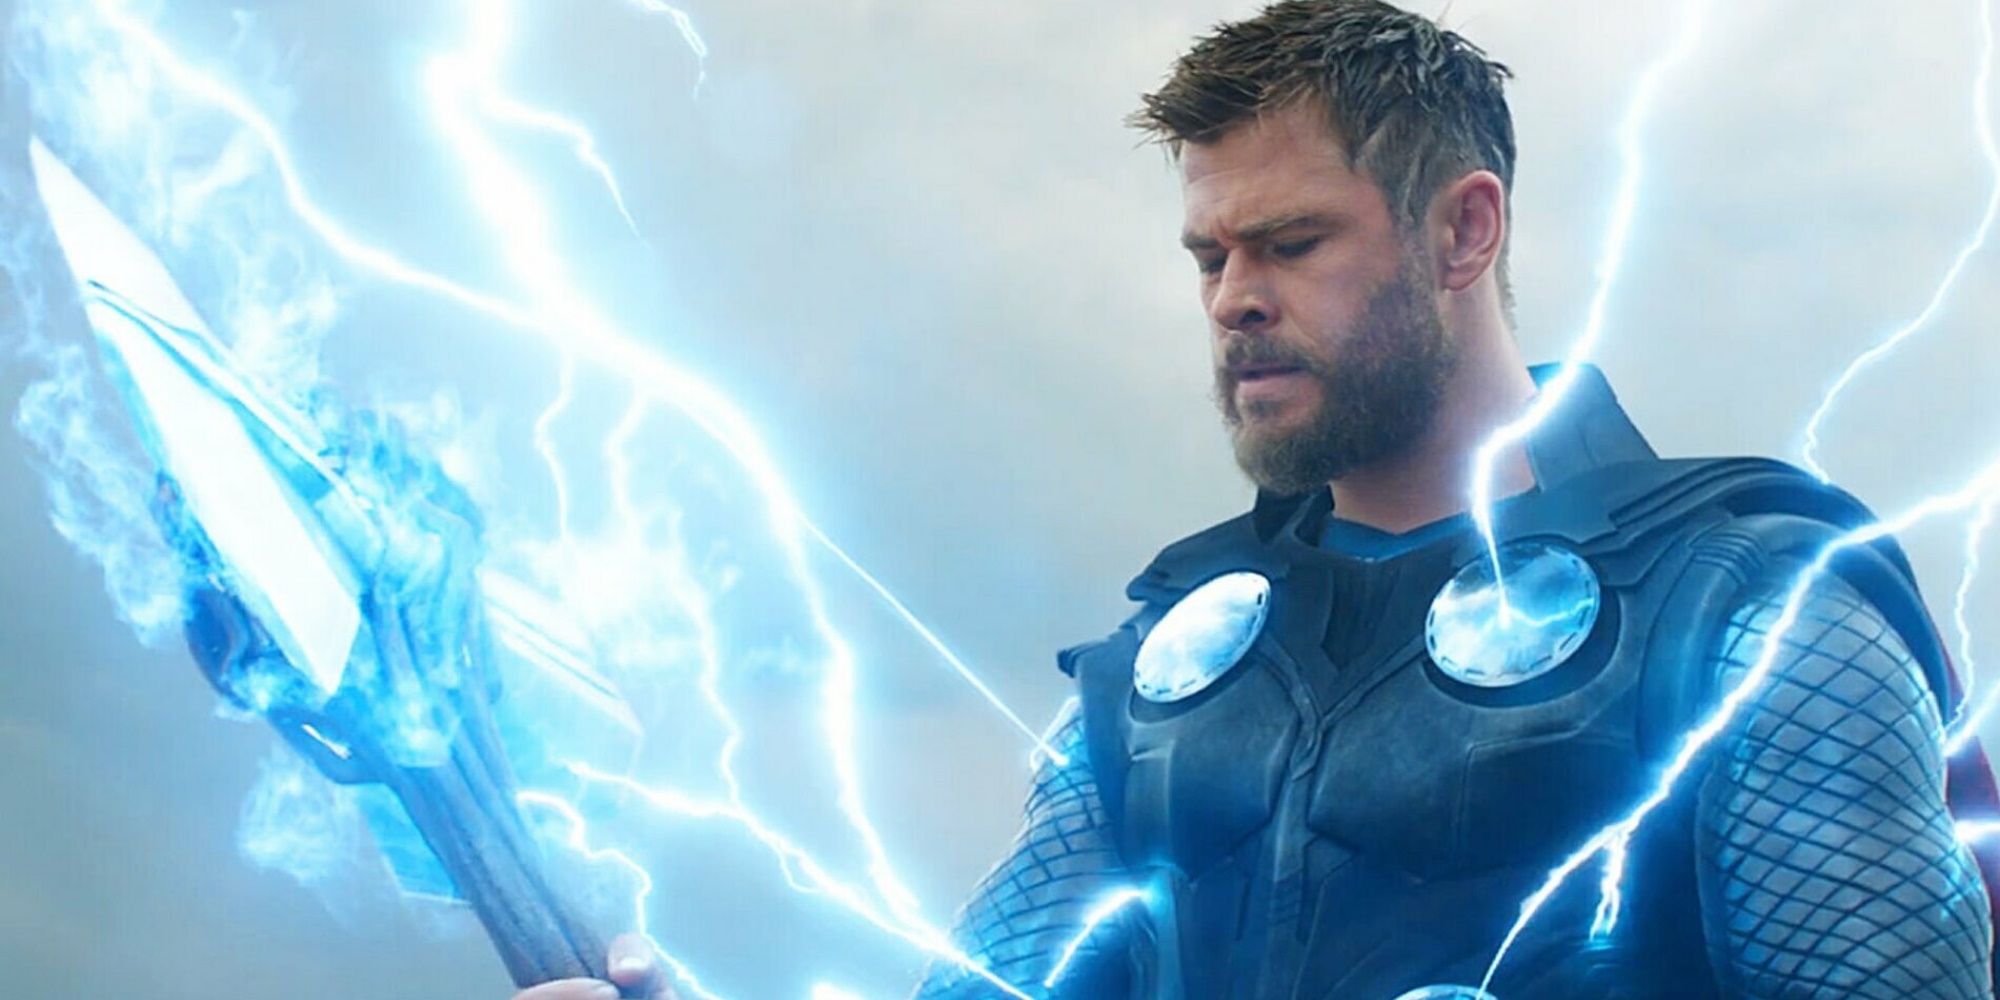 Christopher Hemsworth as Thor in Avengers Endgame